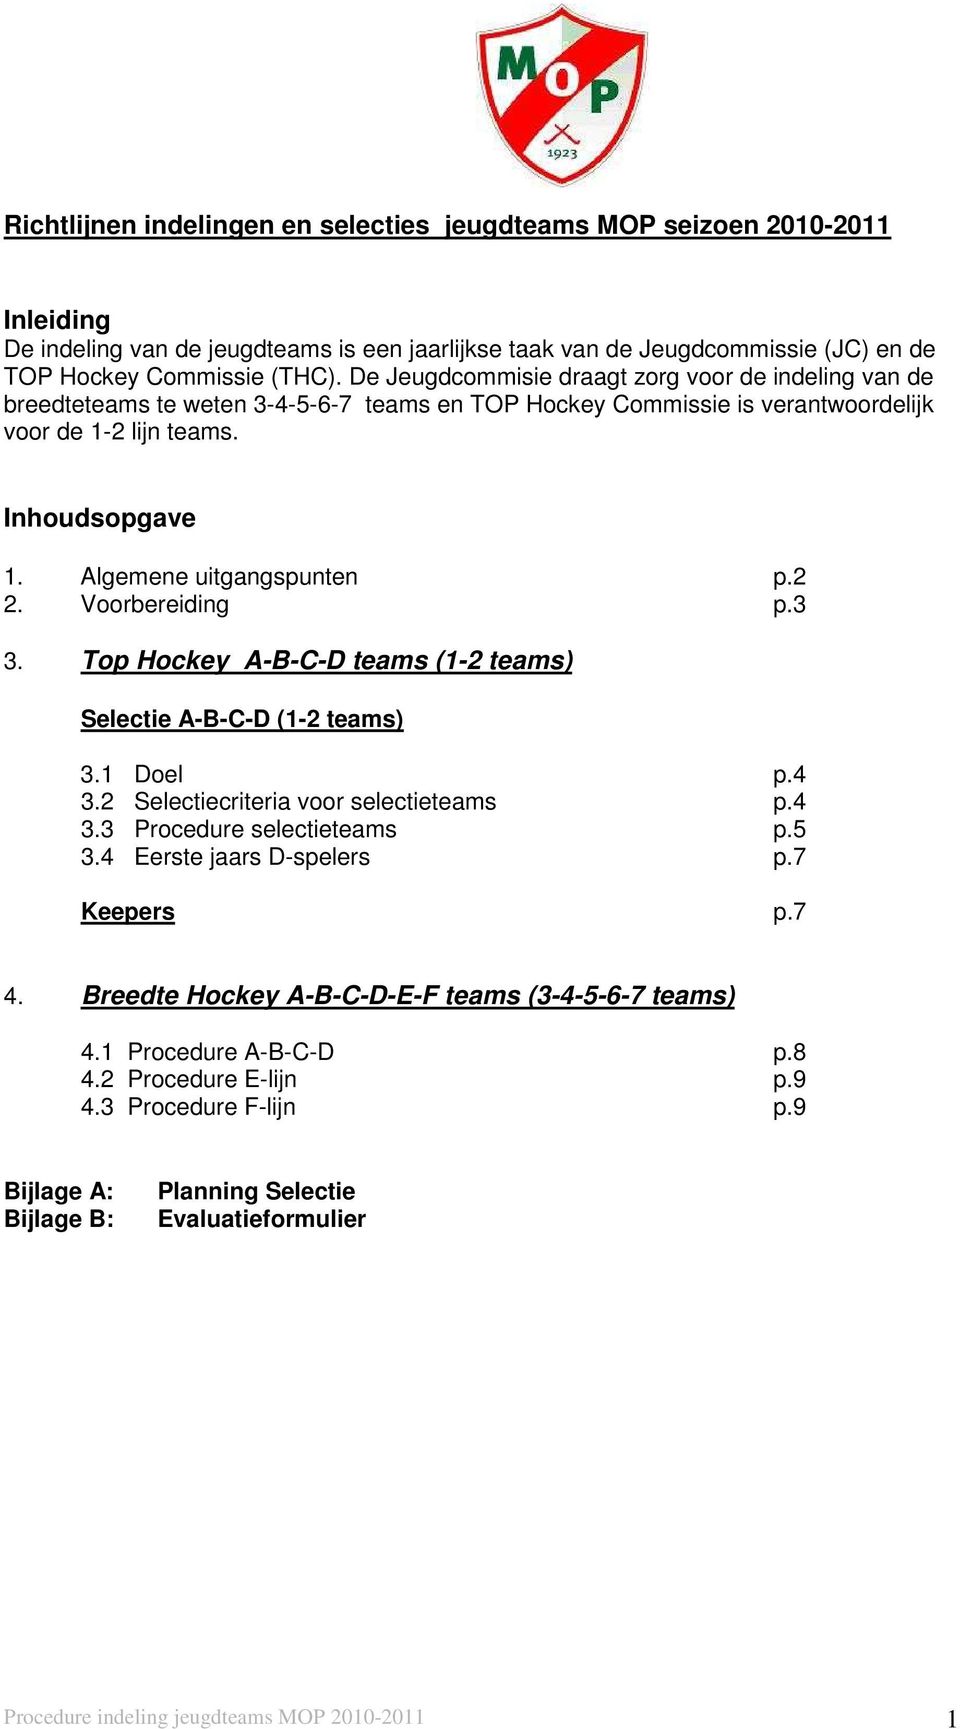 Algemene uitgangspunten p.2 2. Voorbereiding p.3 3. Top Hockey A-B-C-D teams (1-2 teams) Selectie A-B-C-D (1-2 teams) 3.1 Doel p.4 3.2 Selectiecriteria voor selectieteams p.4 3.3 Procedure selectieteams p.